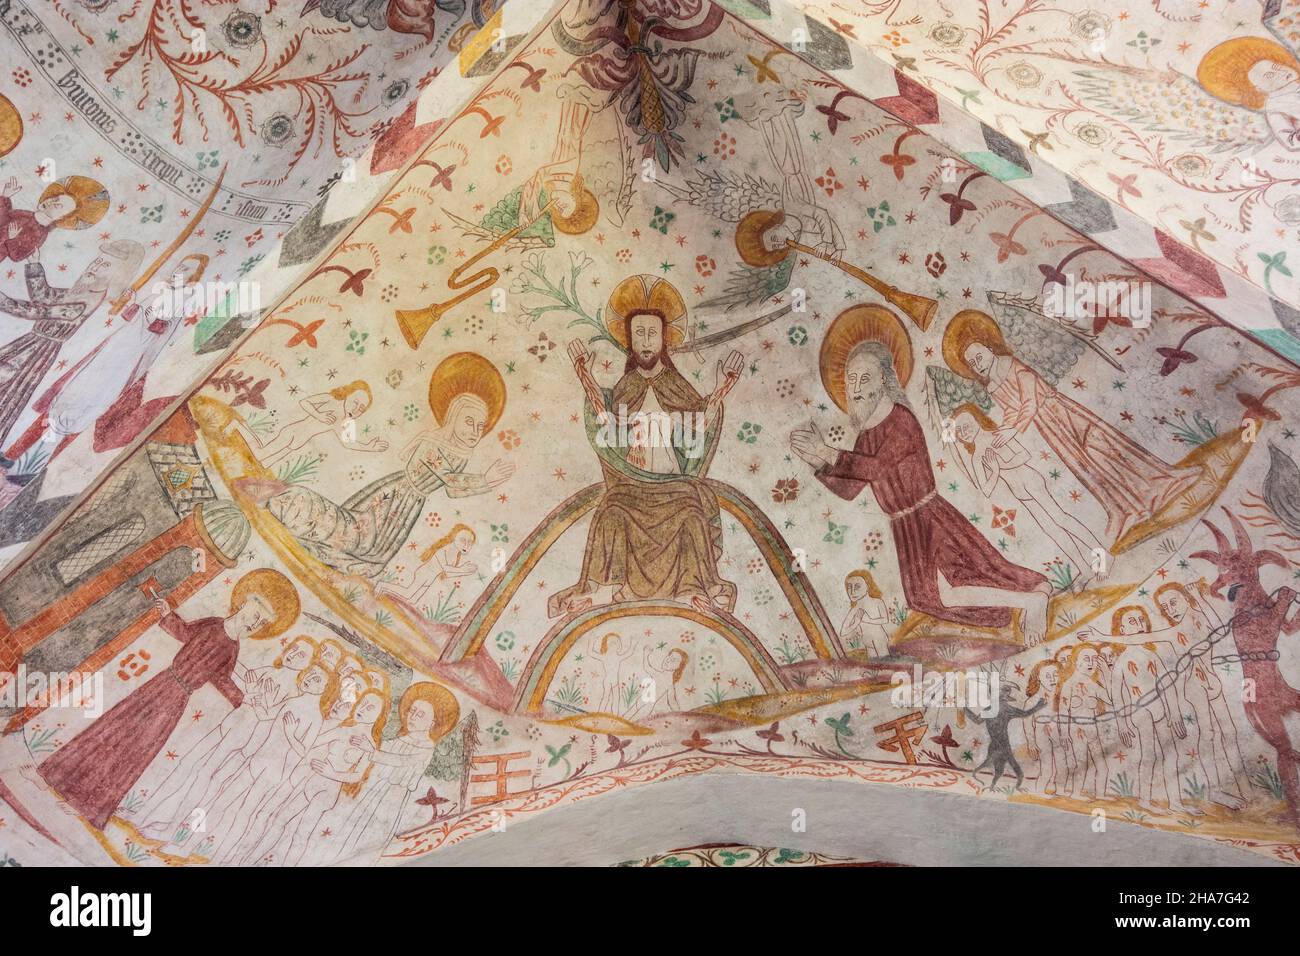 Vordingborg: Keldby Church, famous for its frescoes, in Keldby, Moen, Denmark Stock Photo